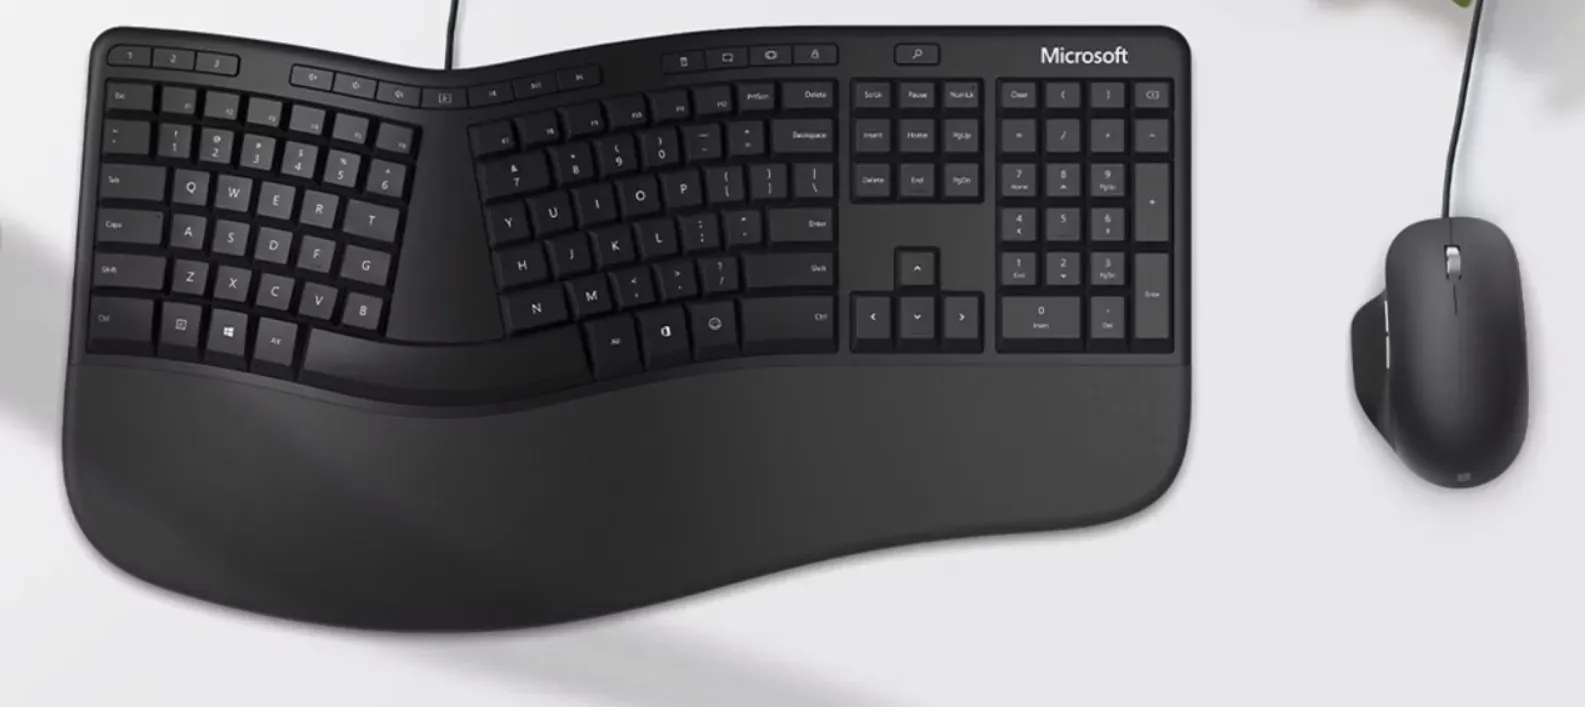 Ергономічна клавіатура та миша від Microsoft можуть опинитися на рубашці, оскільки компанія переорієнтується на аксесуари під брендом Surface.